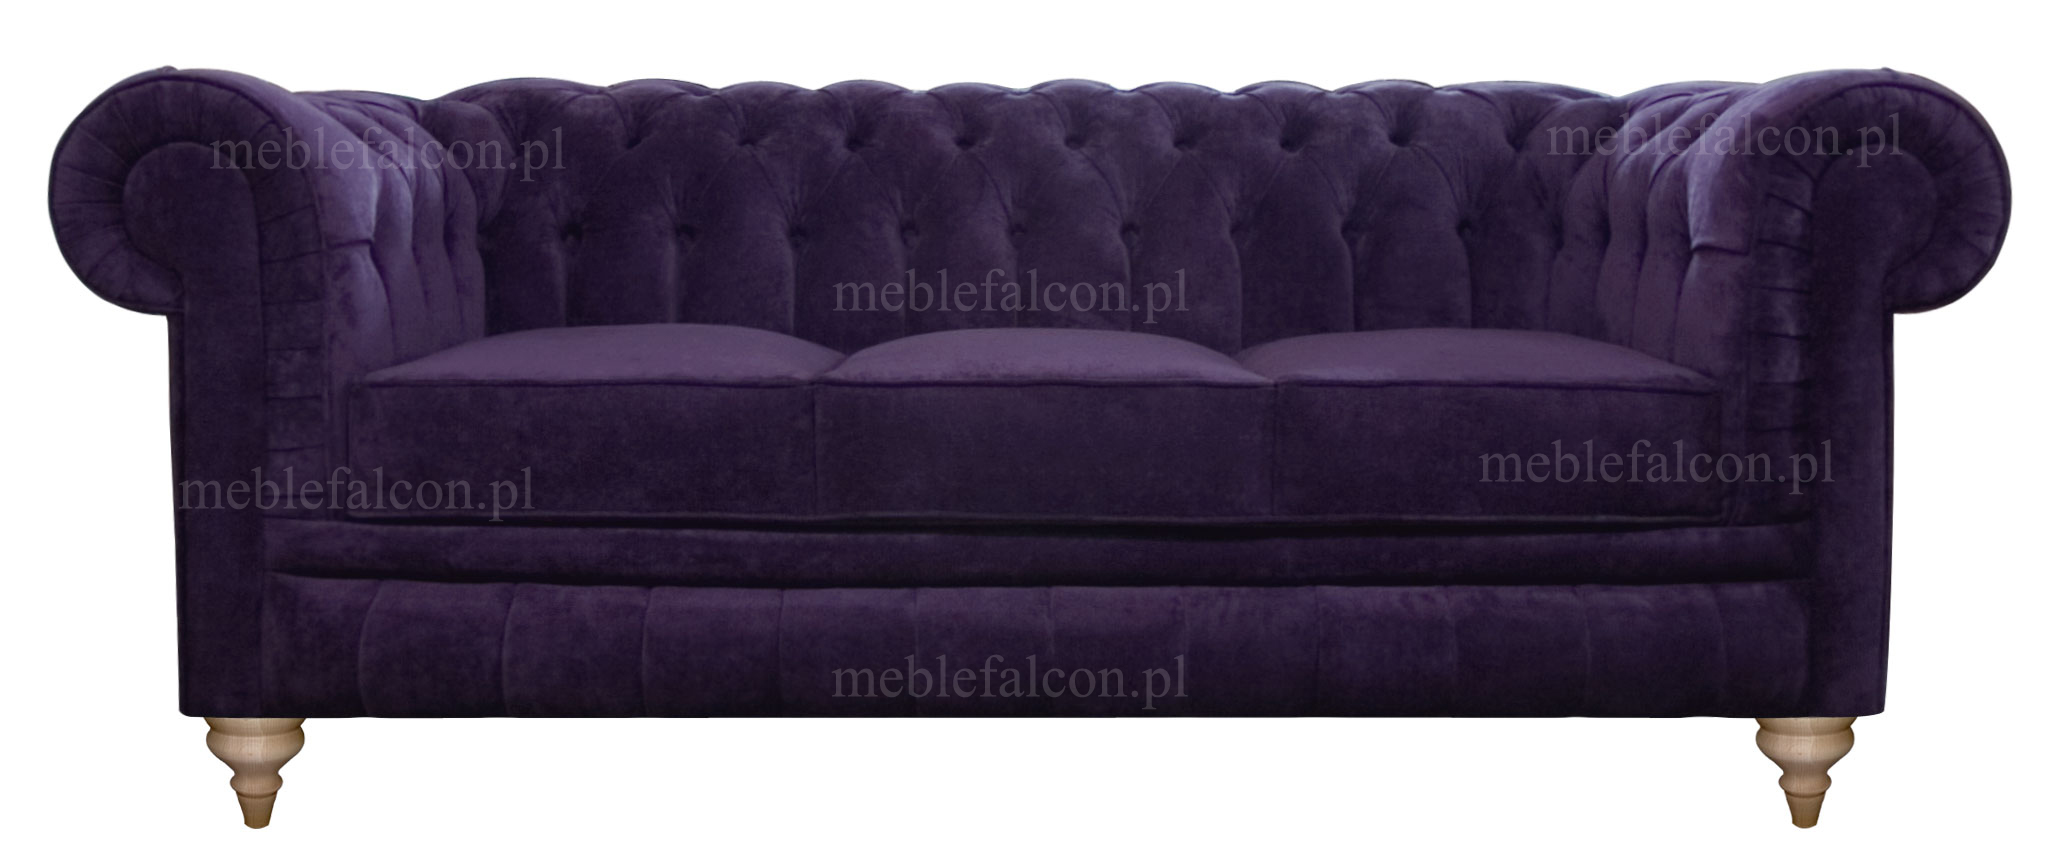 wyjątkowa sofa salonowa w stylu chesterfield pluszaowa fioletowa sofa trzy osobowa stylowa idealna